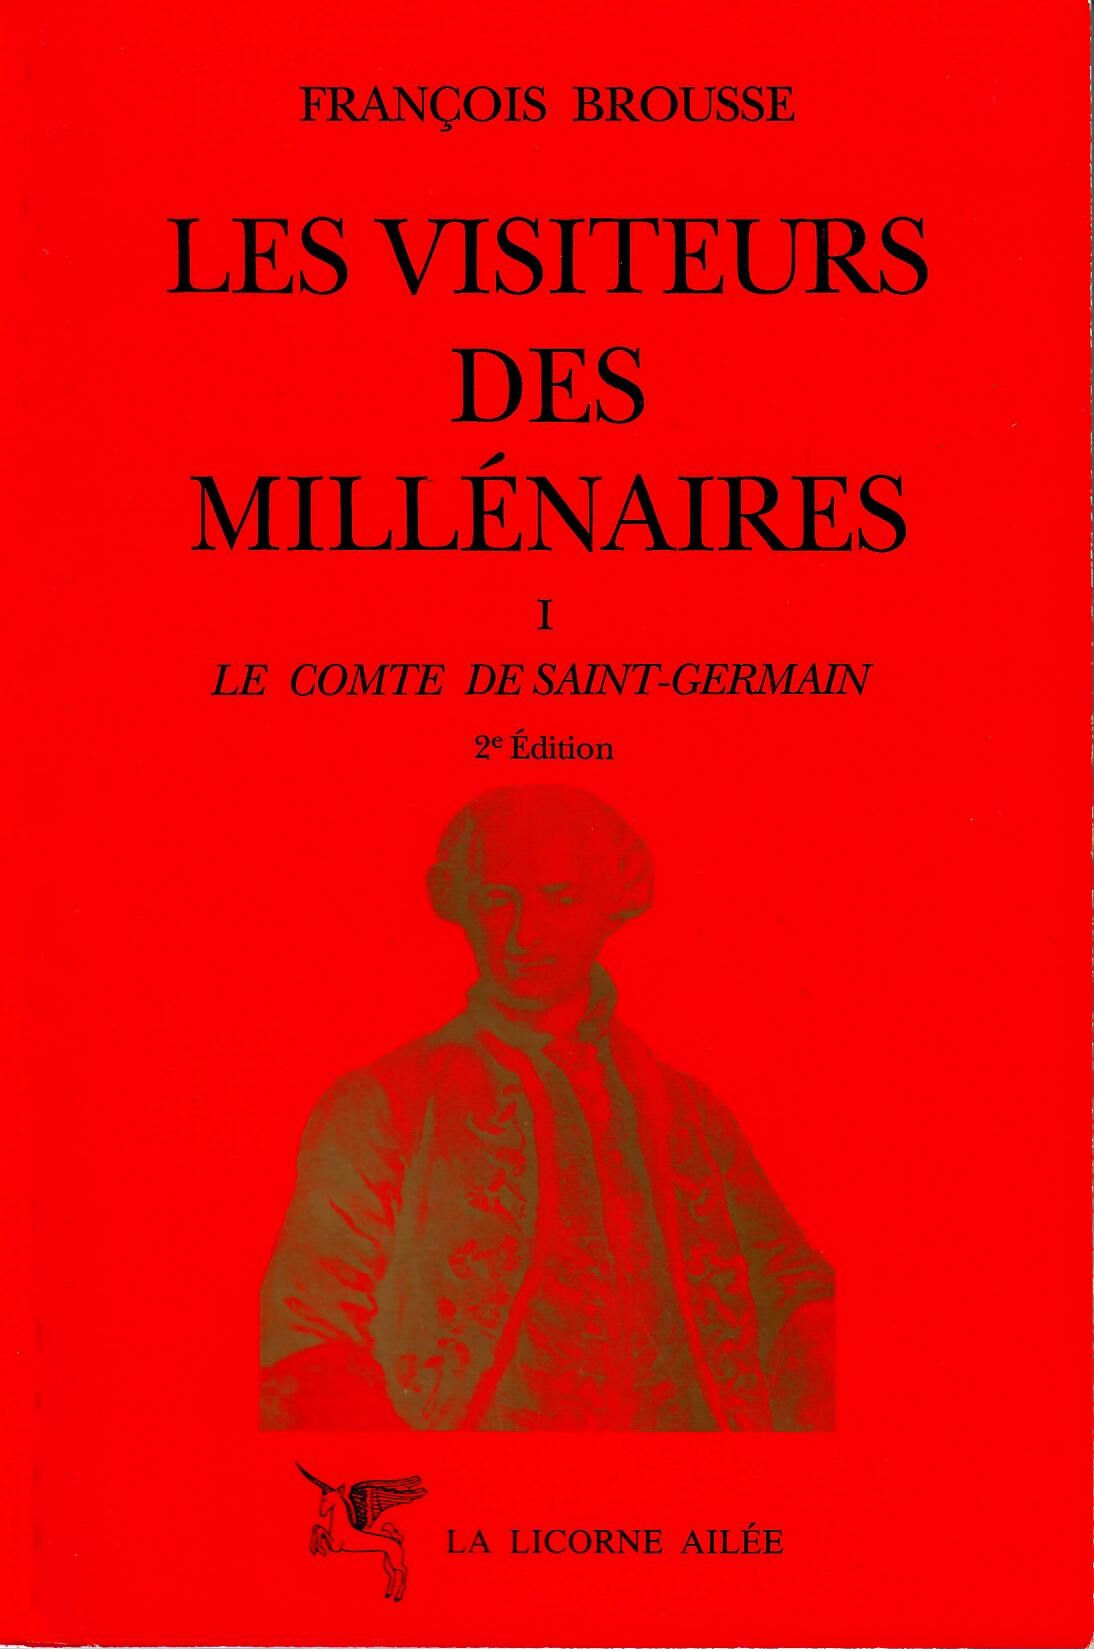 BROUSSE François Les visiteurs des millénaires Tome 1 Le comte de Saint Germain Librairie Eklectic